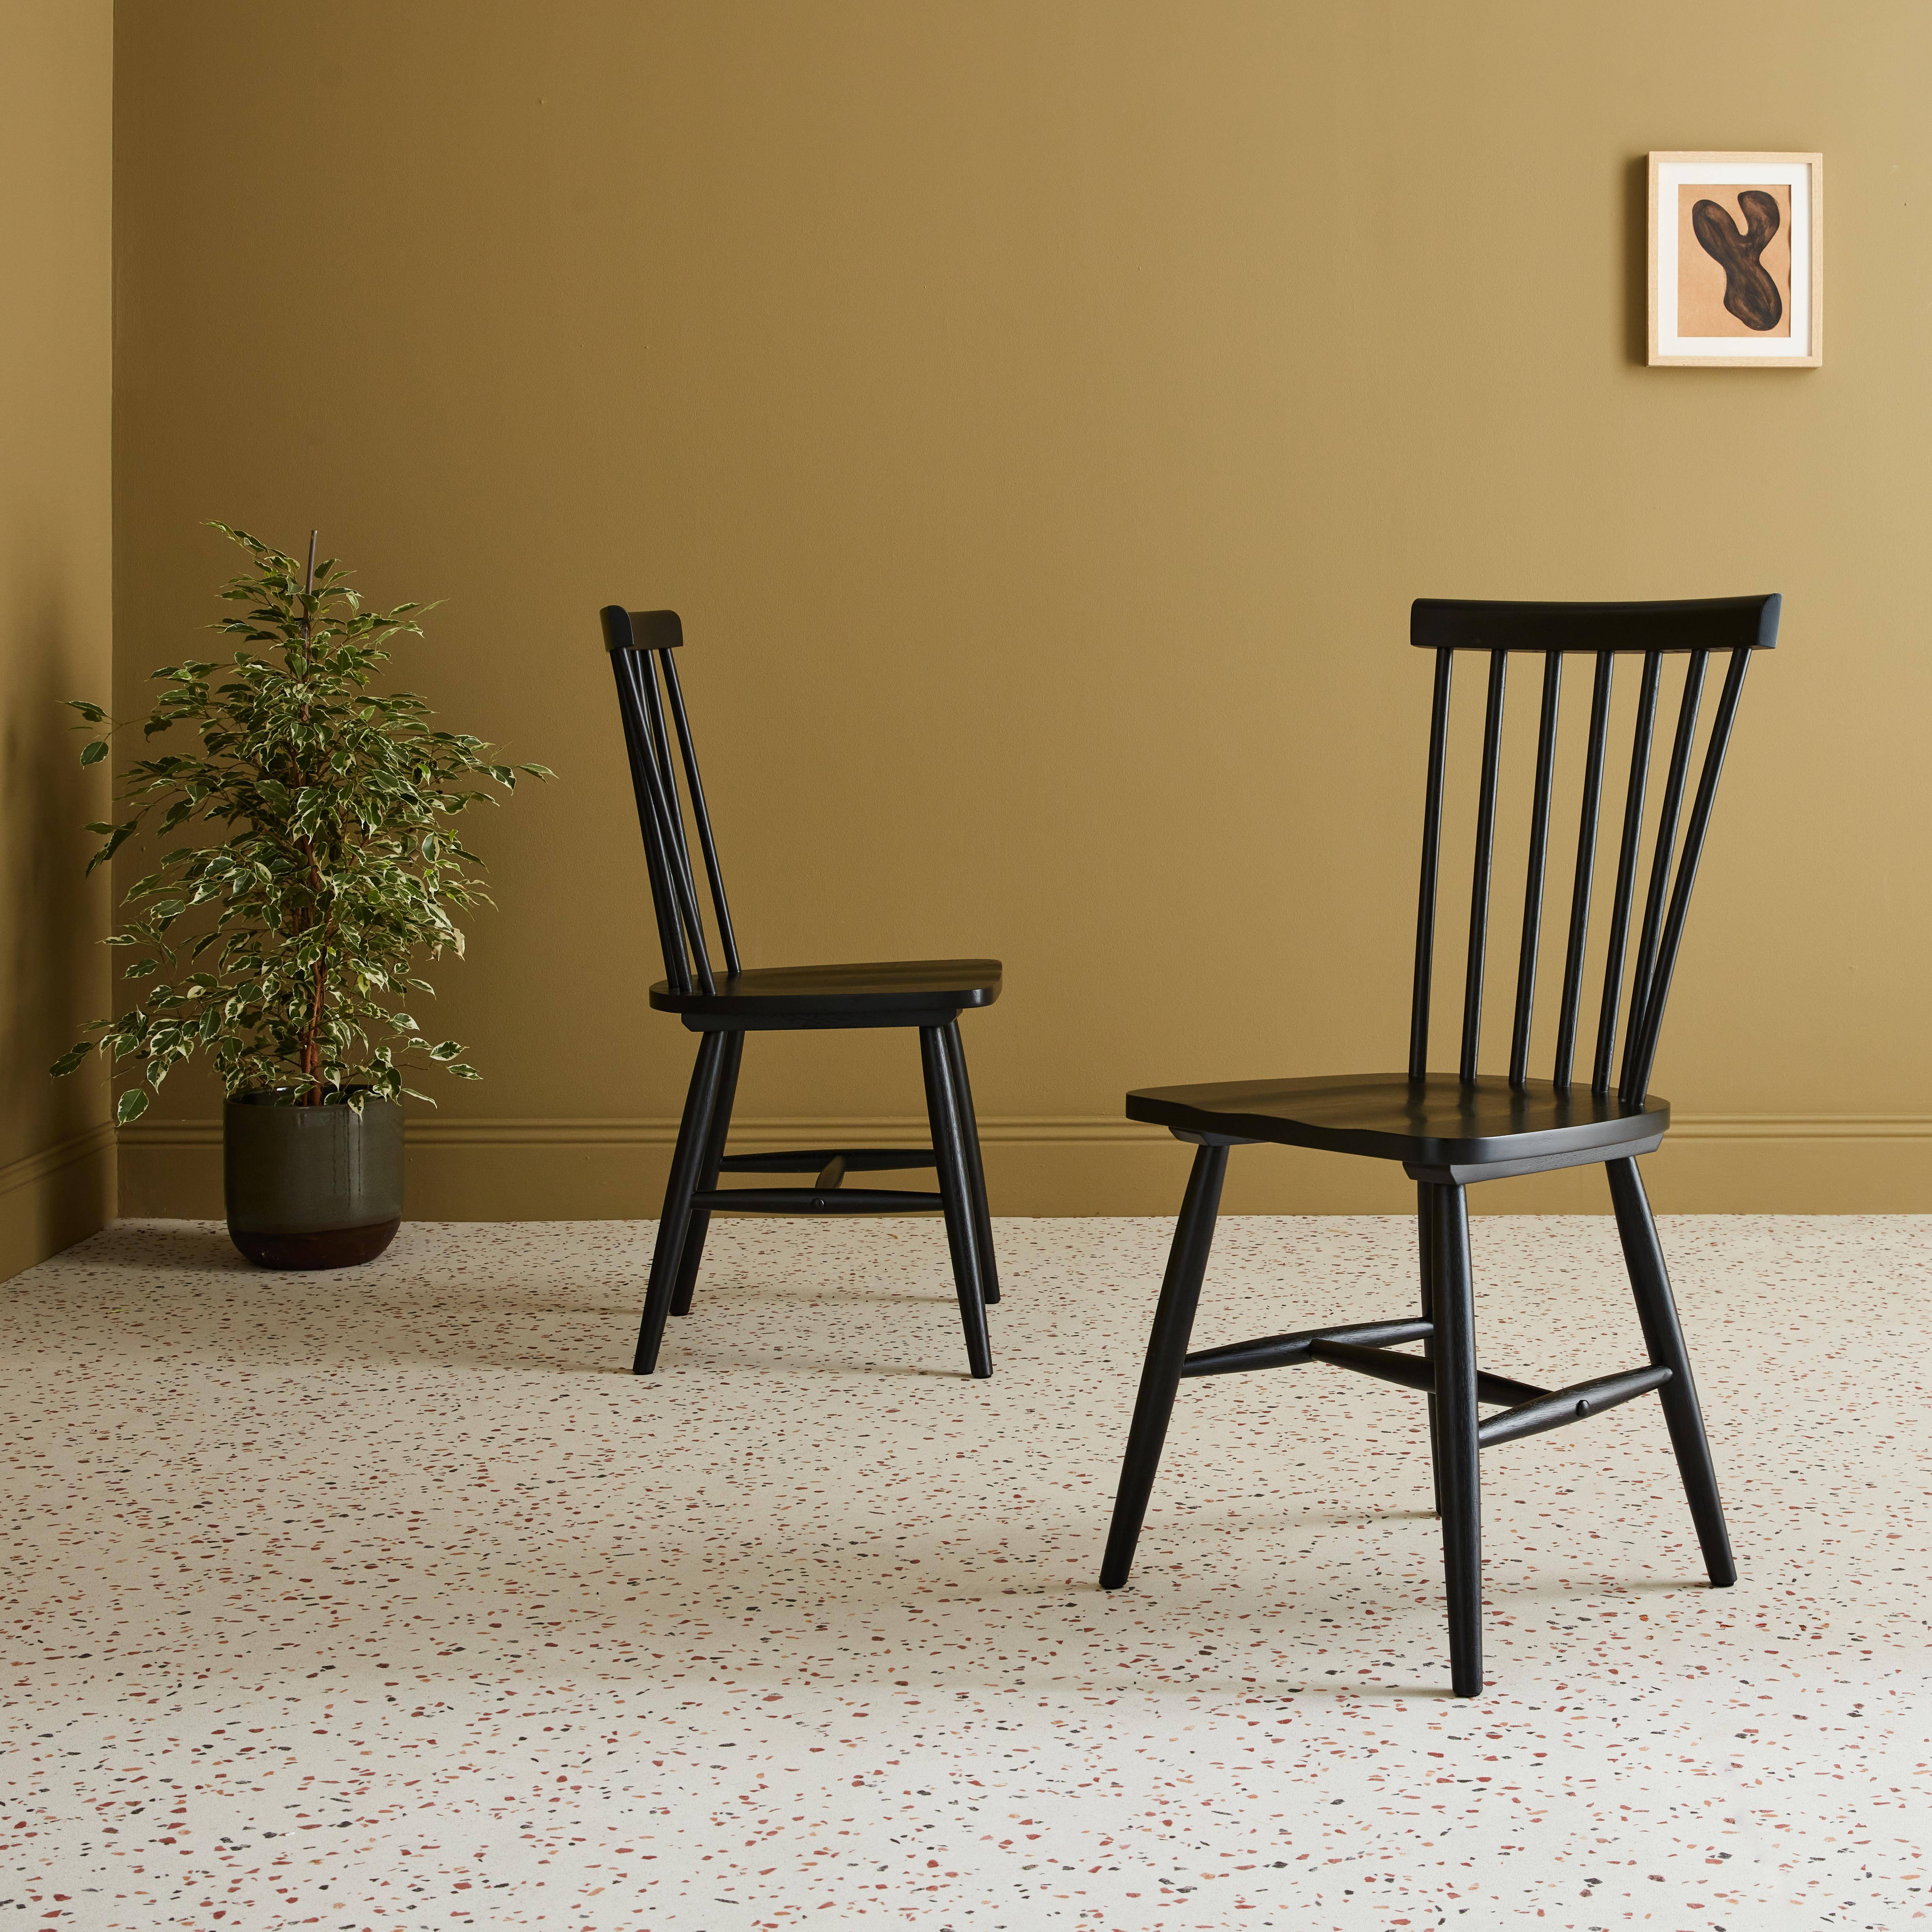 Set di 2 sedie a doghe in legno di gomma nero, ROMIE, L 50,8 x P 44,2 x H 90cm Photo1